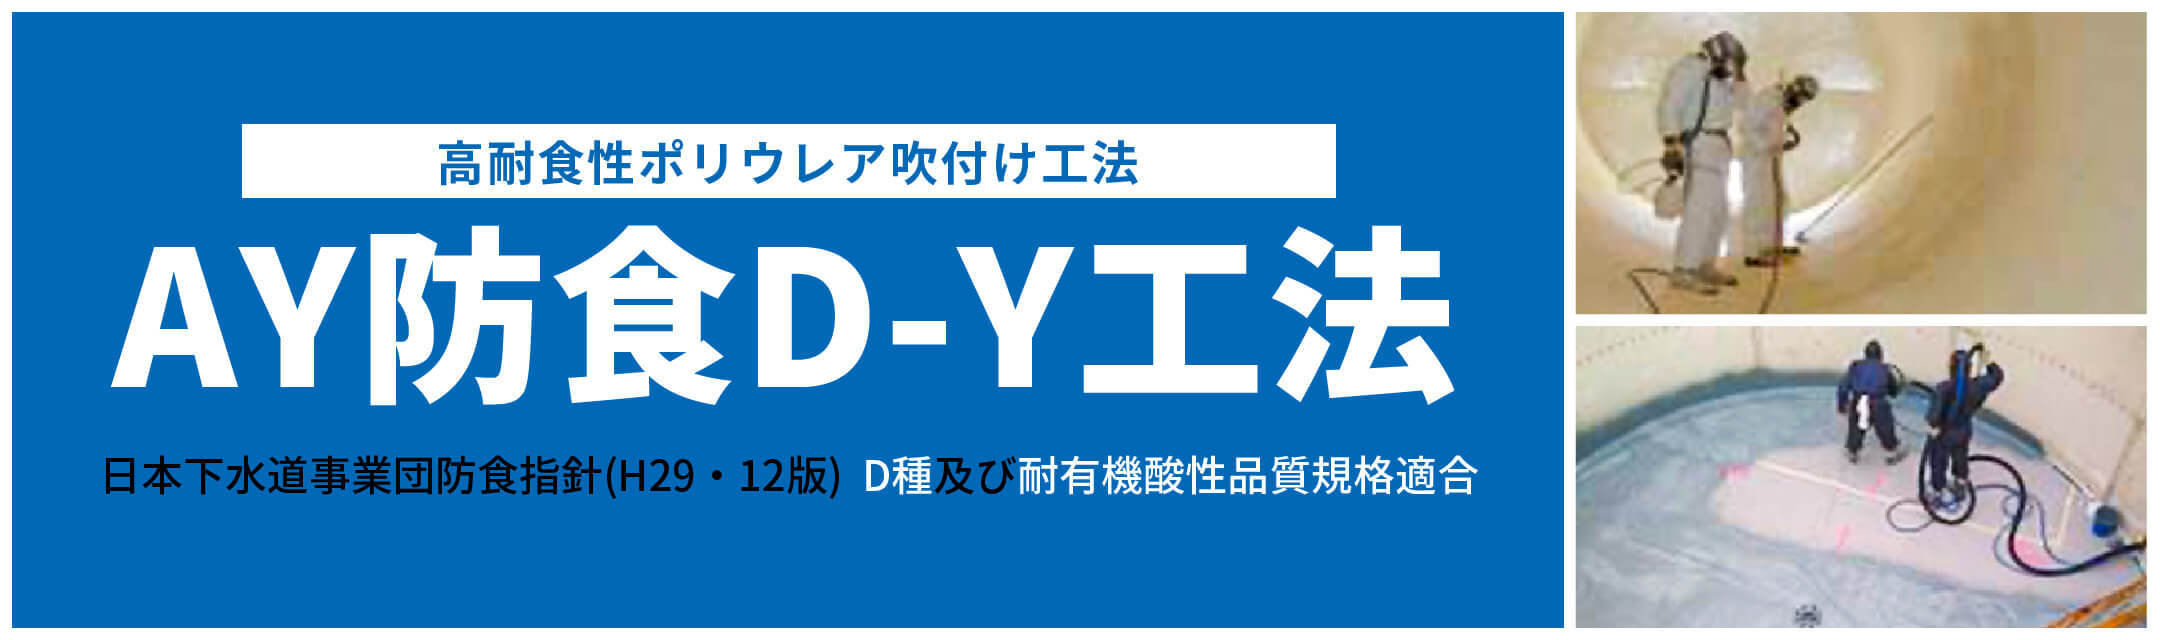 高耐食性ポリウレア吹付け工法 AY防食D-Y工法 日本下水道事業団防食指針(H29・12版)  D種及び耐有機酸性品質規格適合